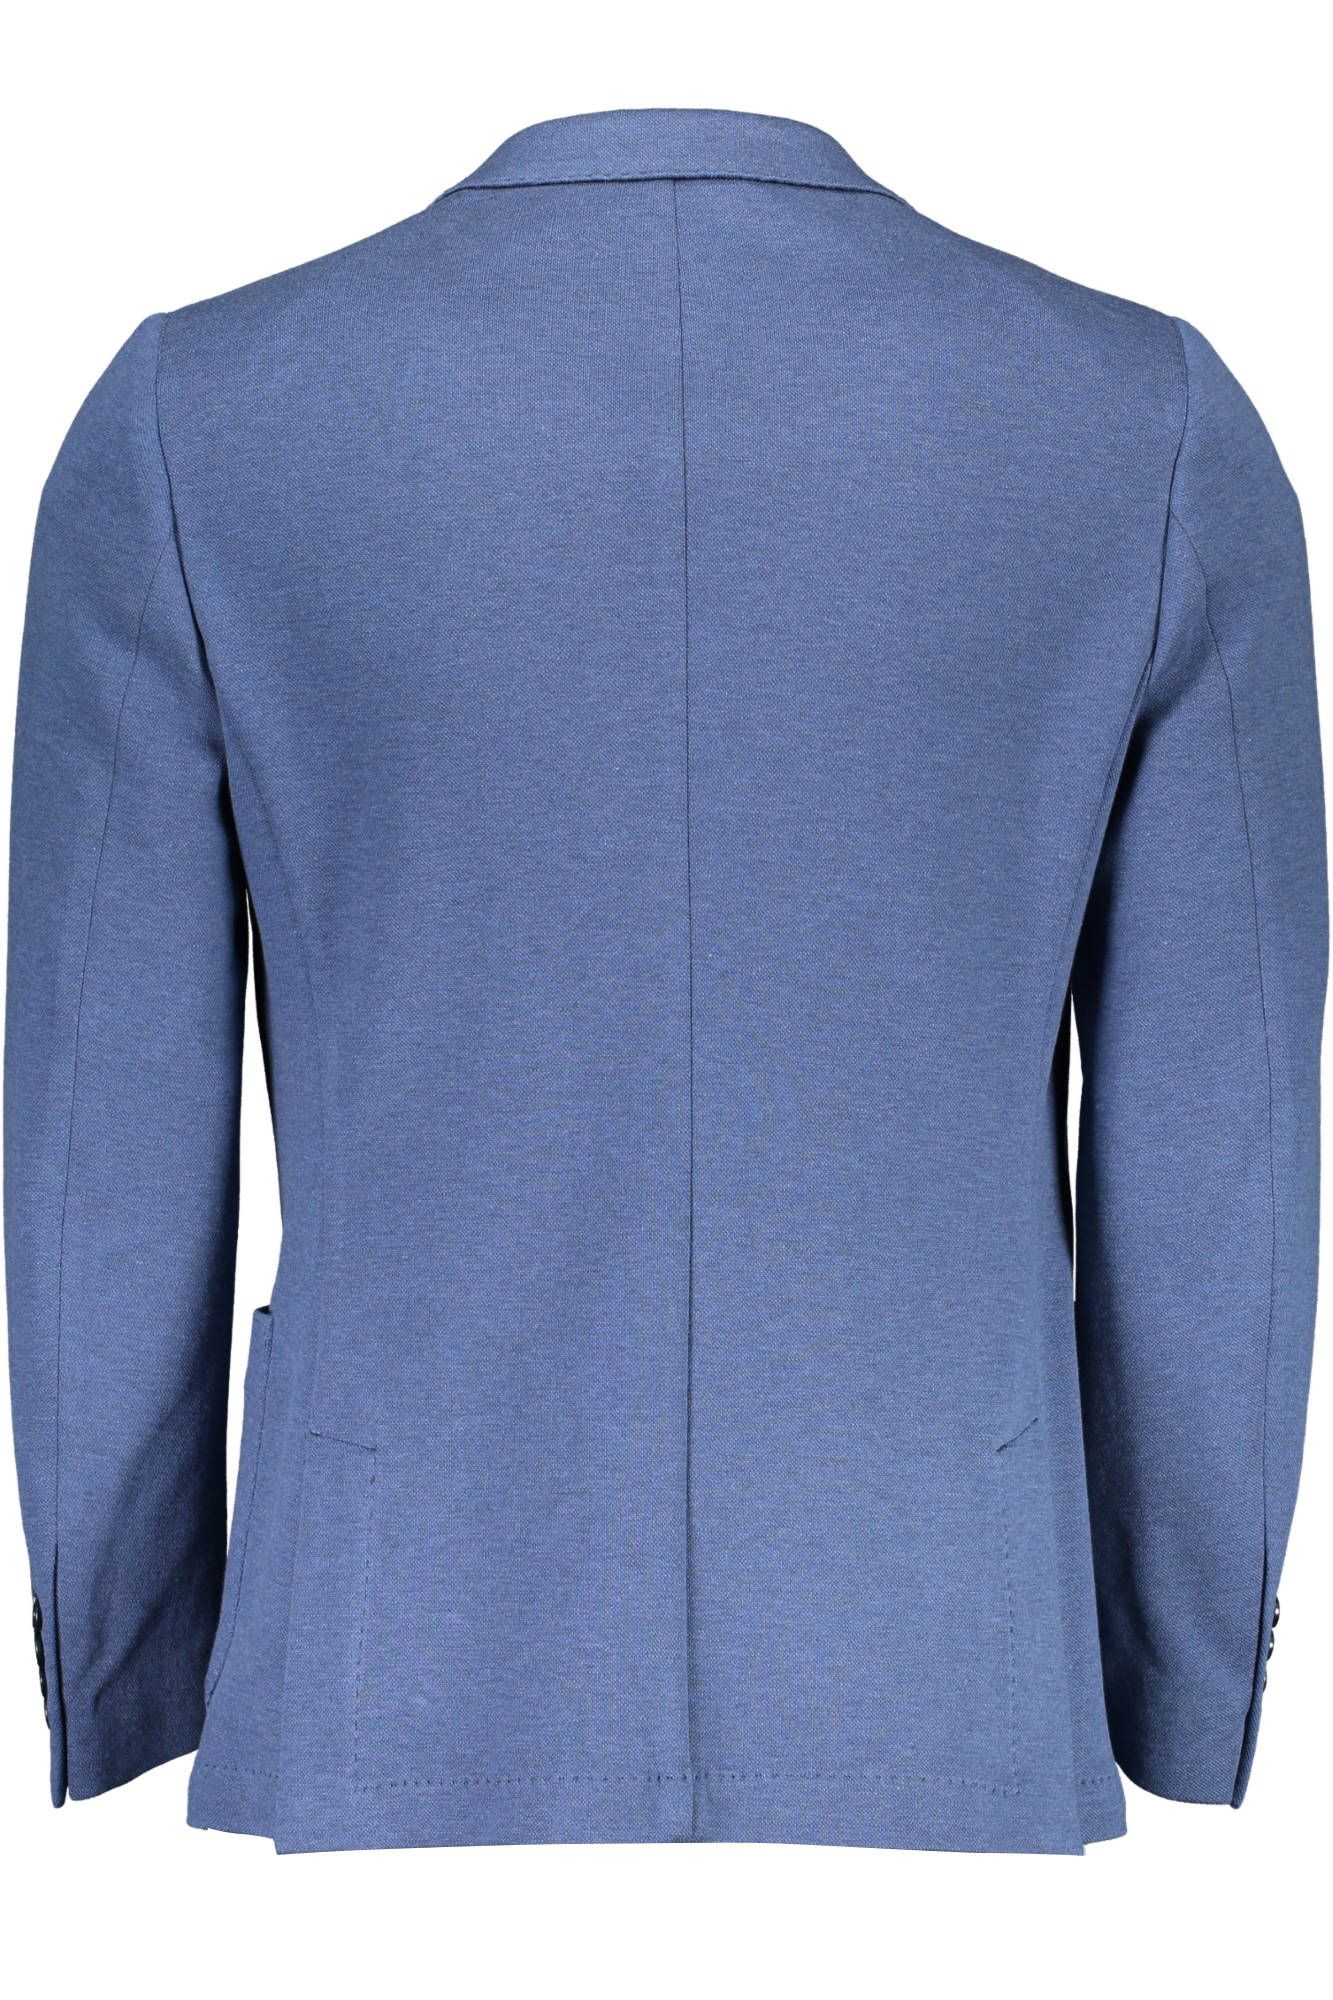 Elegant Cotton Blend Blue Jacket